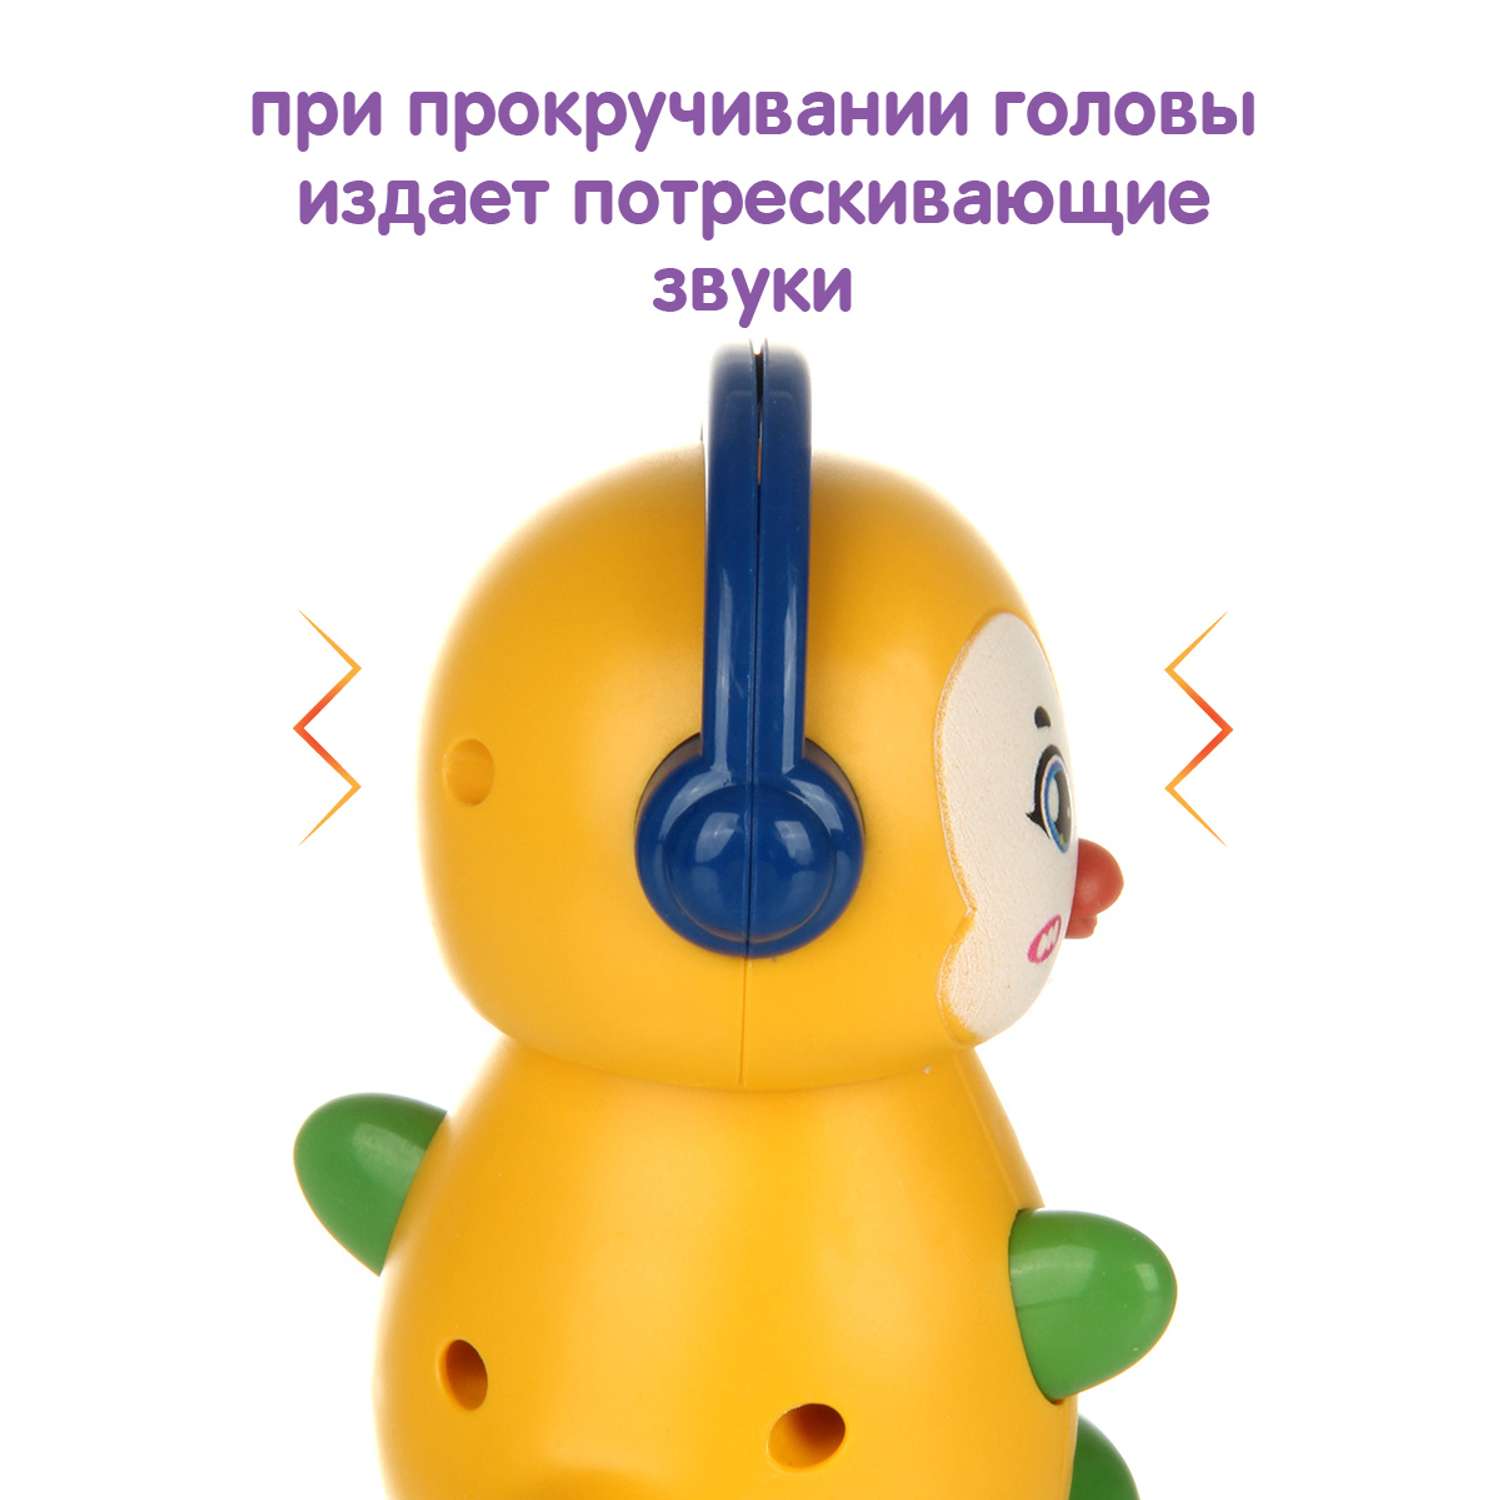 Развивающая игрушка Ути Пути Покатушка Пингвин со звуками - фото 3